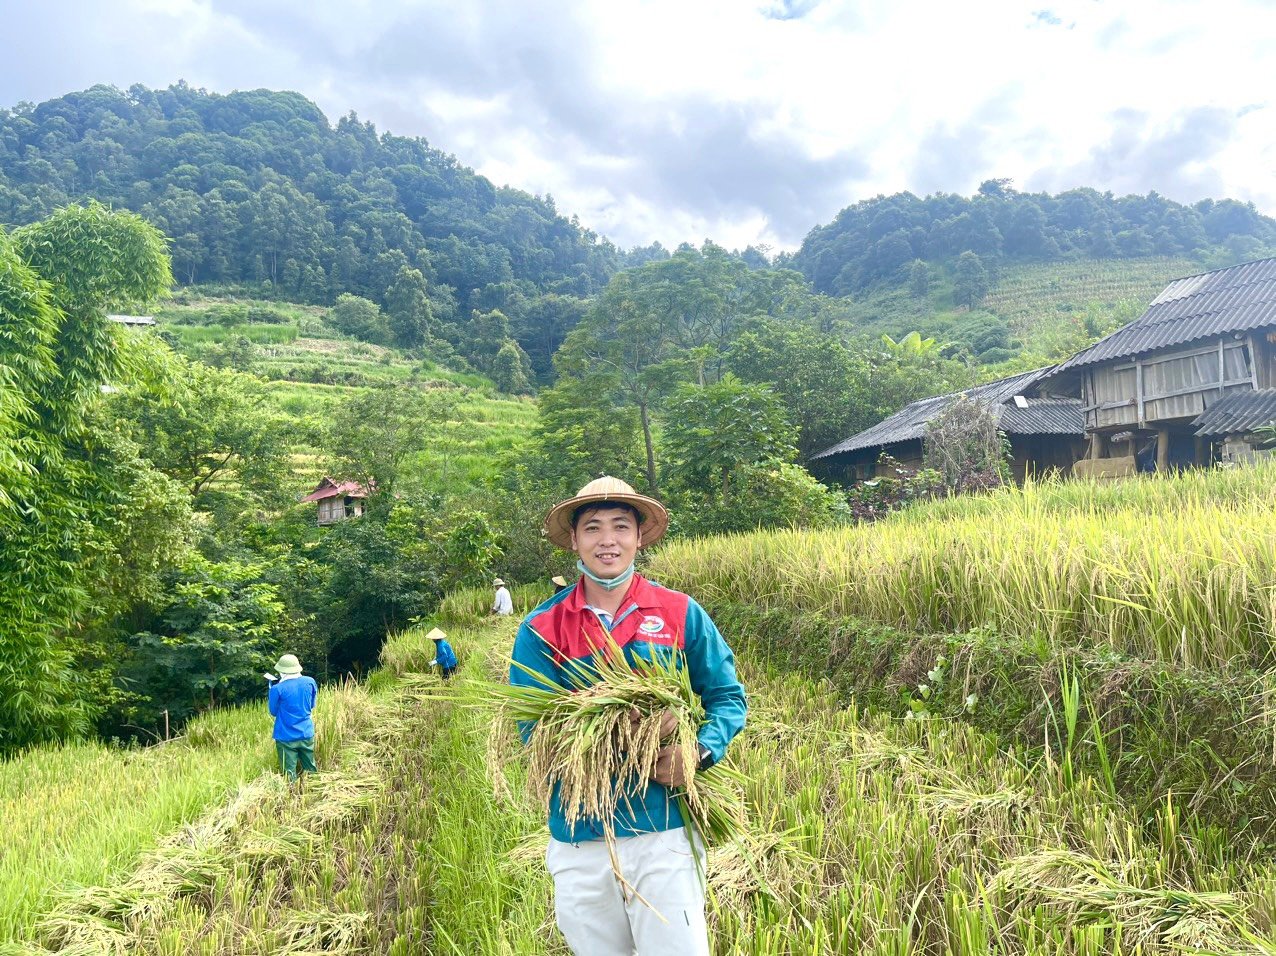 Sau khi thu hoạch, Tập đoàn Quế Lâm cam kết thu mua lúa cho bà con với giá 15.500 đồng/kg lúa Tẻ Râu đã phơi khô, quạt sạch. Ảnh: Hoàng Anh.